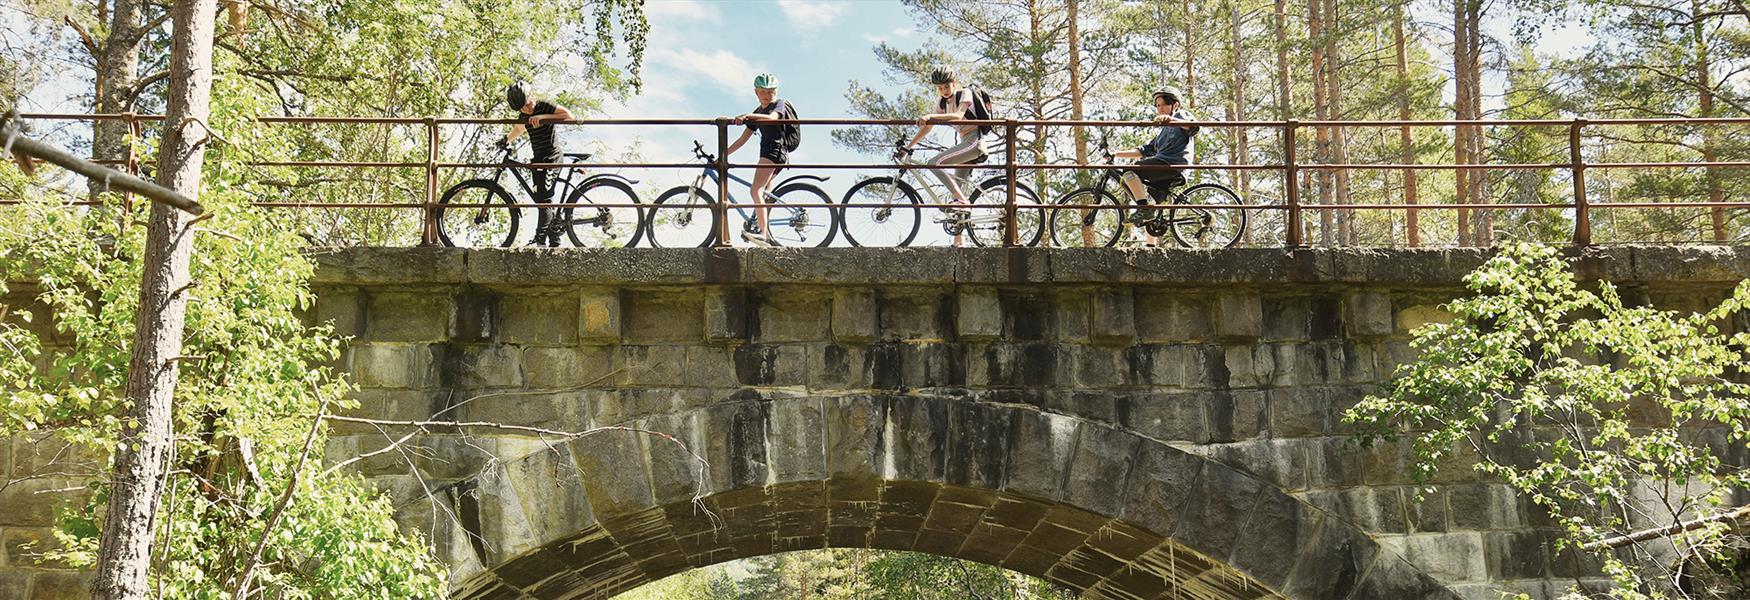 gruppe barn med sykler står på en bro